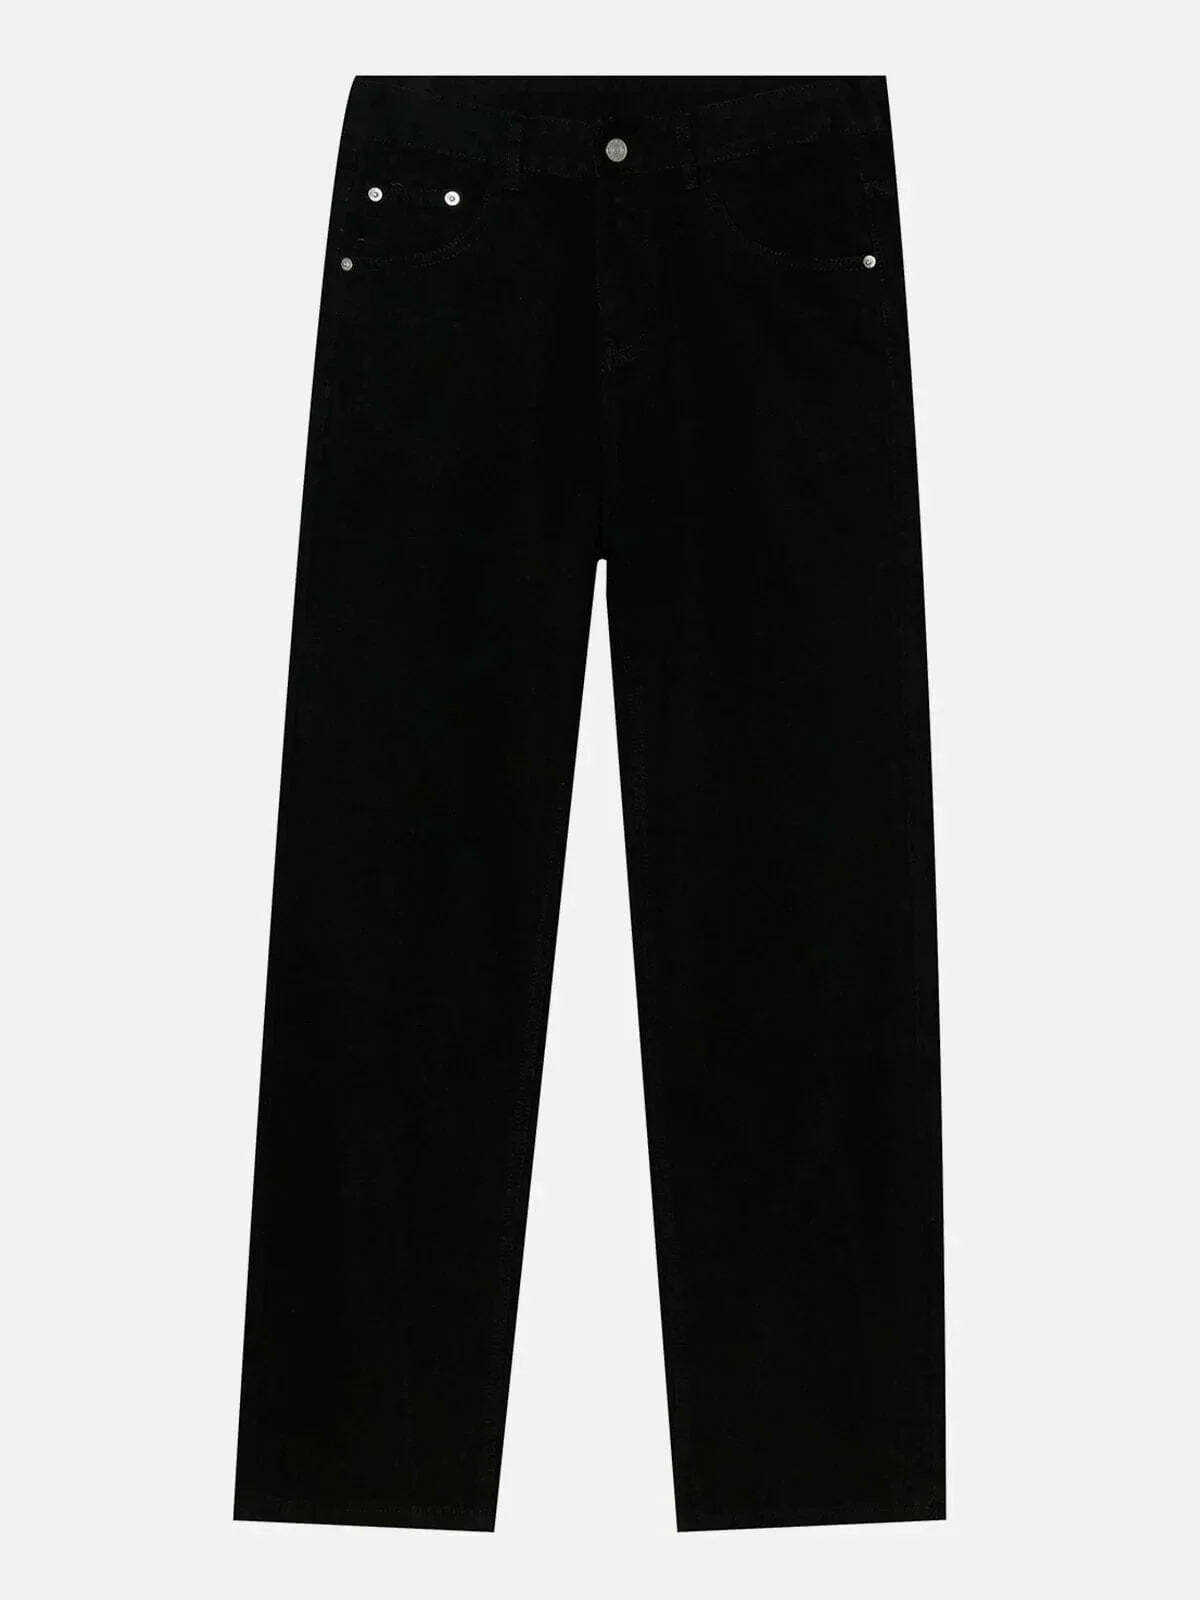 statement zip jeans edgy & sleek streetwear 2591